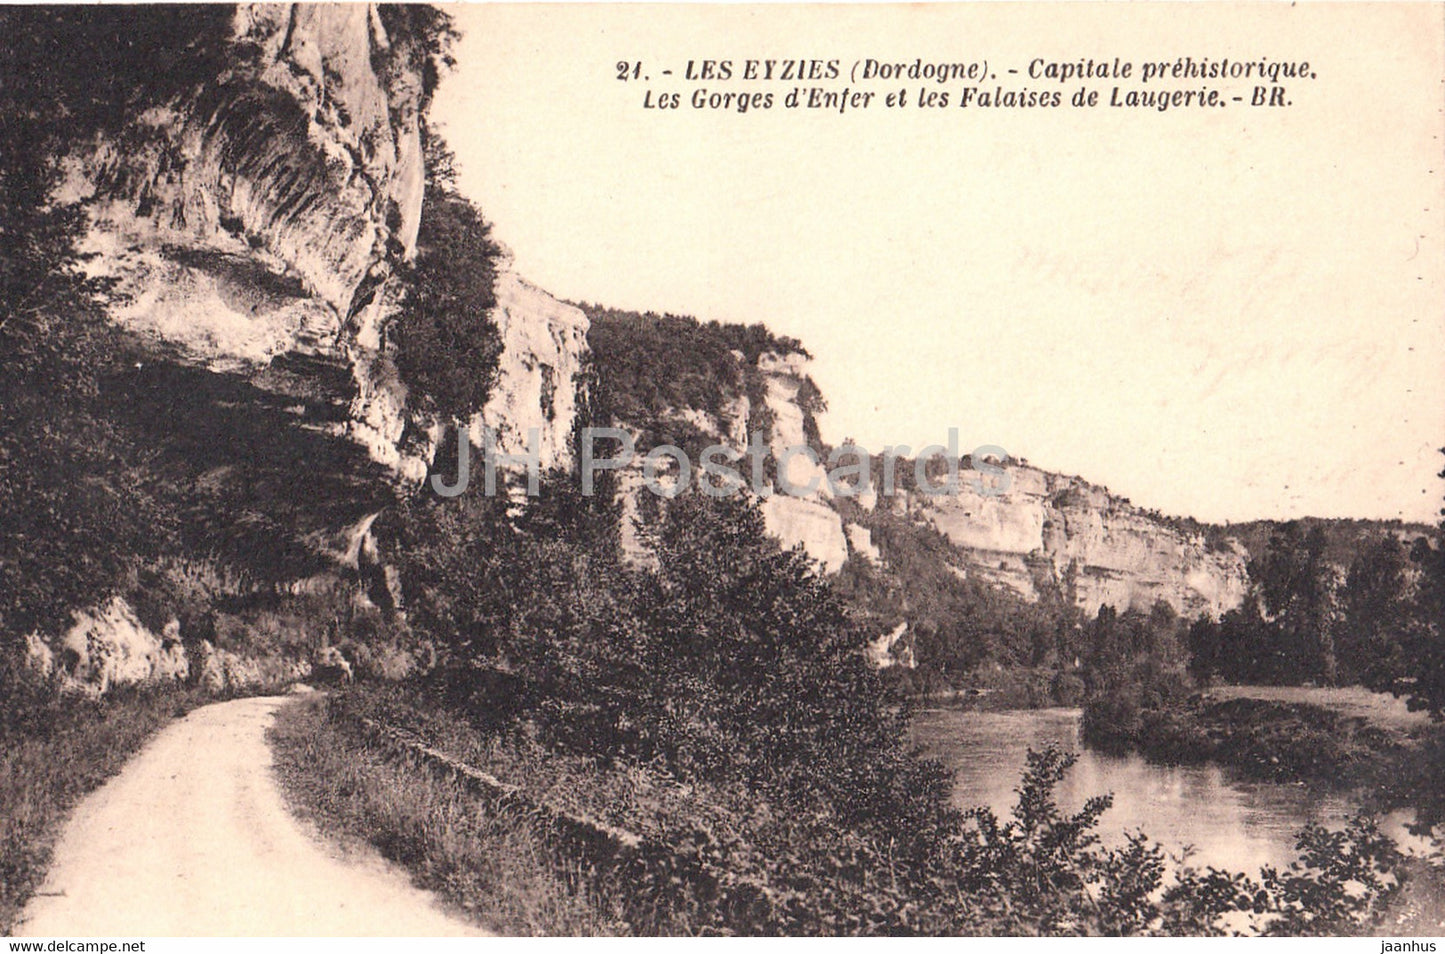 Les Eyzies - Capitale prehisorique - Les Gorges d'Enfer et les Falaises de Laugerie 21 - old postcard - France - unused - JH Postcards